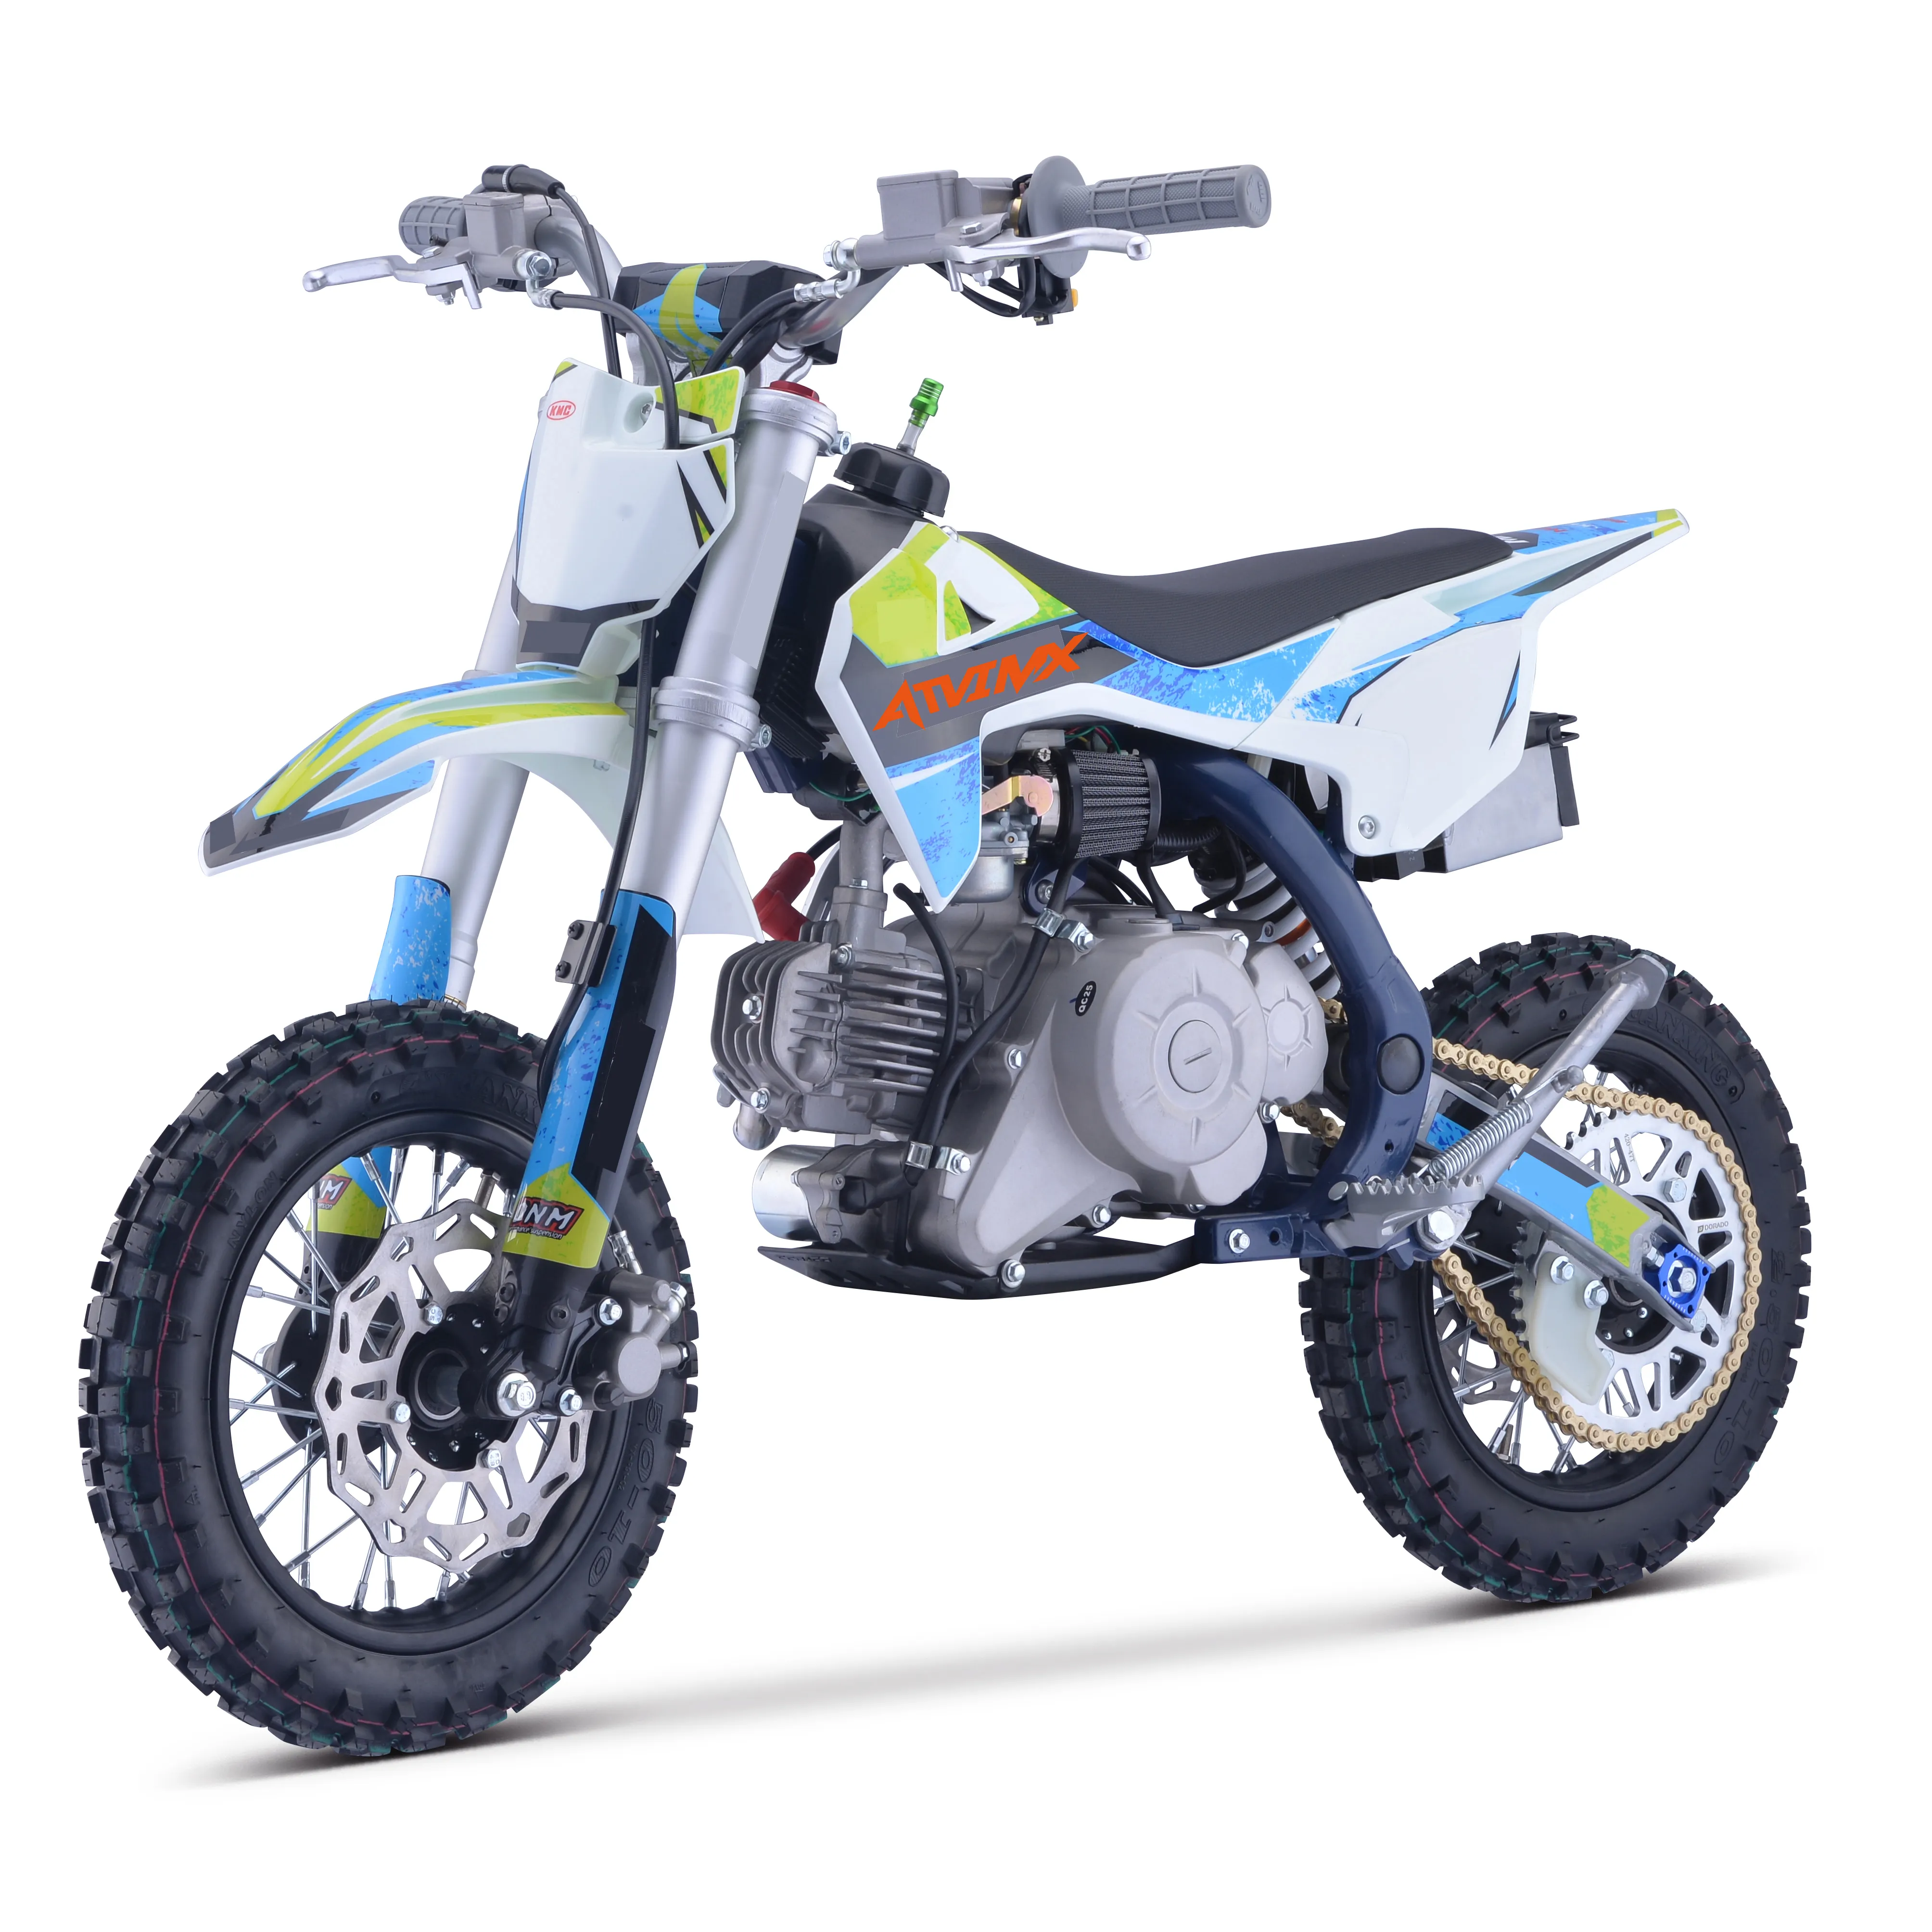 Хорошее качество питбайк Zongshen двигатель 60cc дешевый диртбайк другие автоматические мотоциклы для продажи для отдыха (DB60)